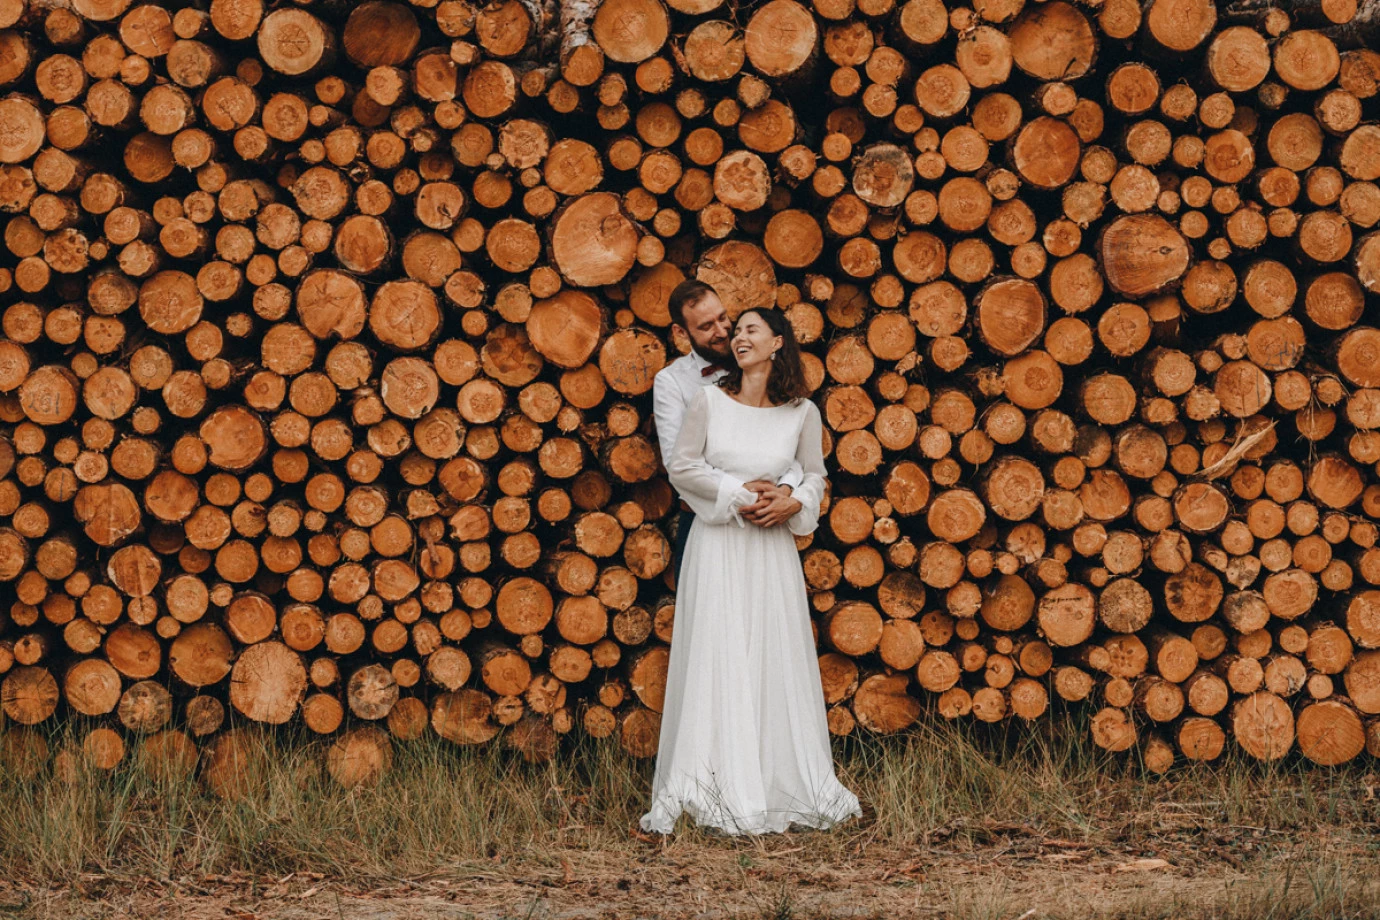 zdjęcia szczecin fotograf piotr-budzynski portfolio zdjecia slubne inspiracje wesele plener slubny sesja slubna